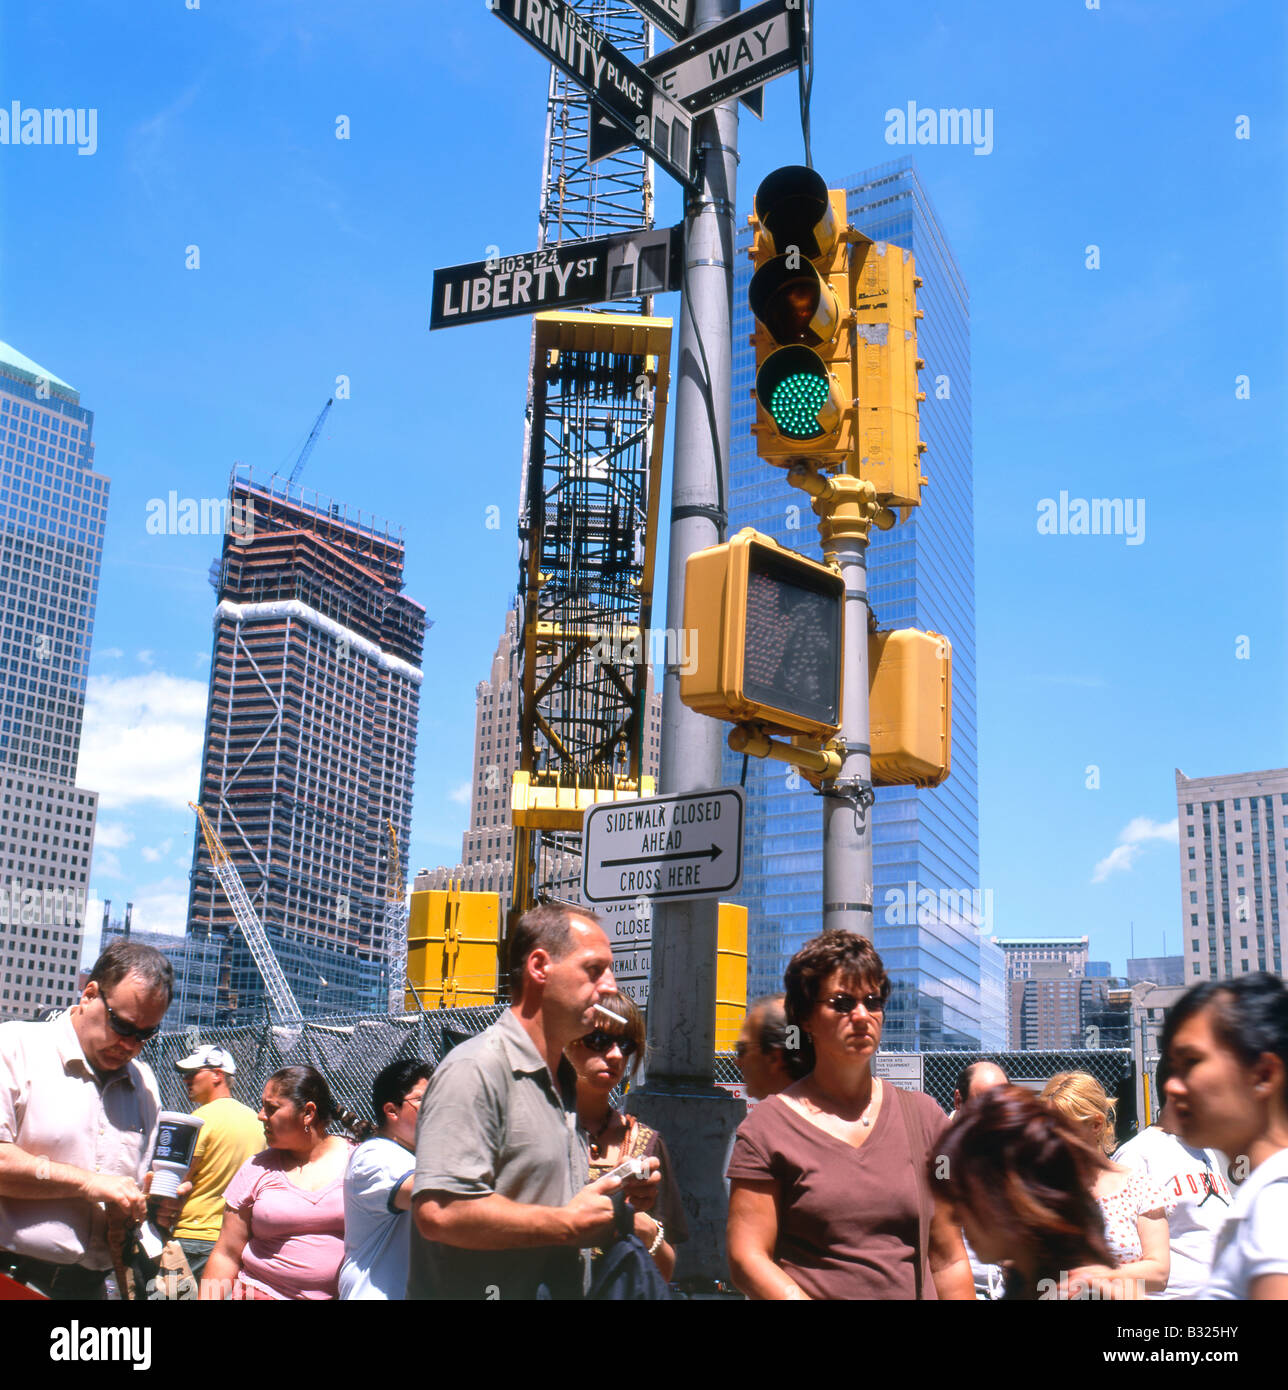 Fußgänger warten Road an der Liberty Street Ampel in der Nähe des Ground Zero Freedom Tower in New York City KATHY DEWITT zu überqueren Stockfoto